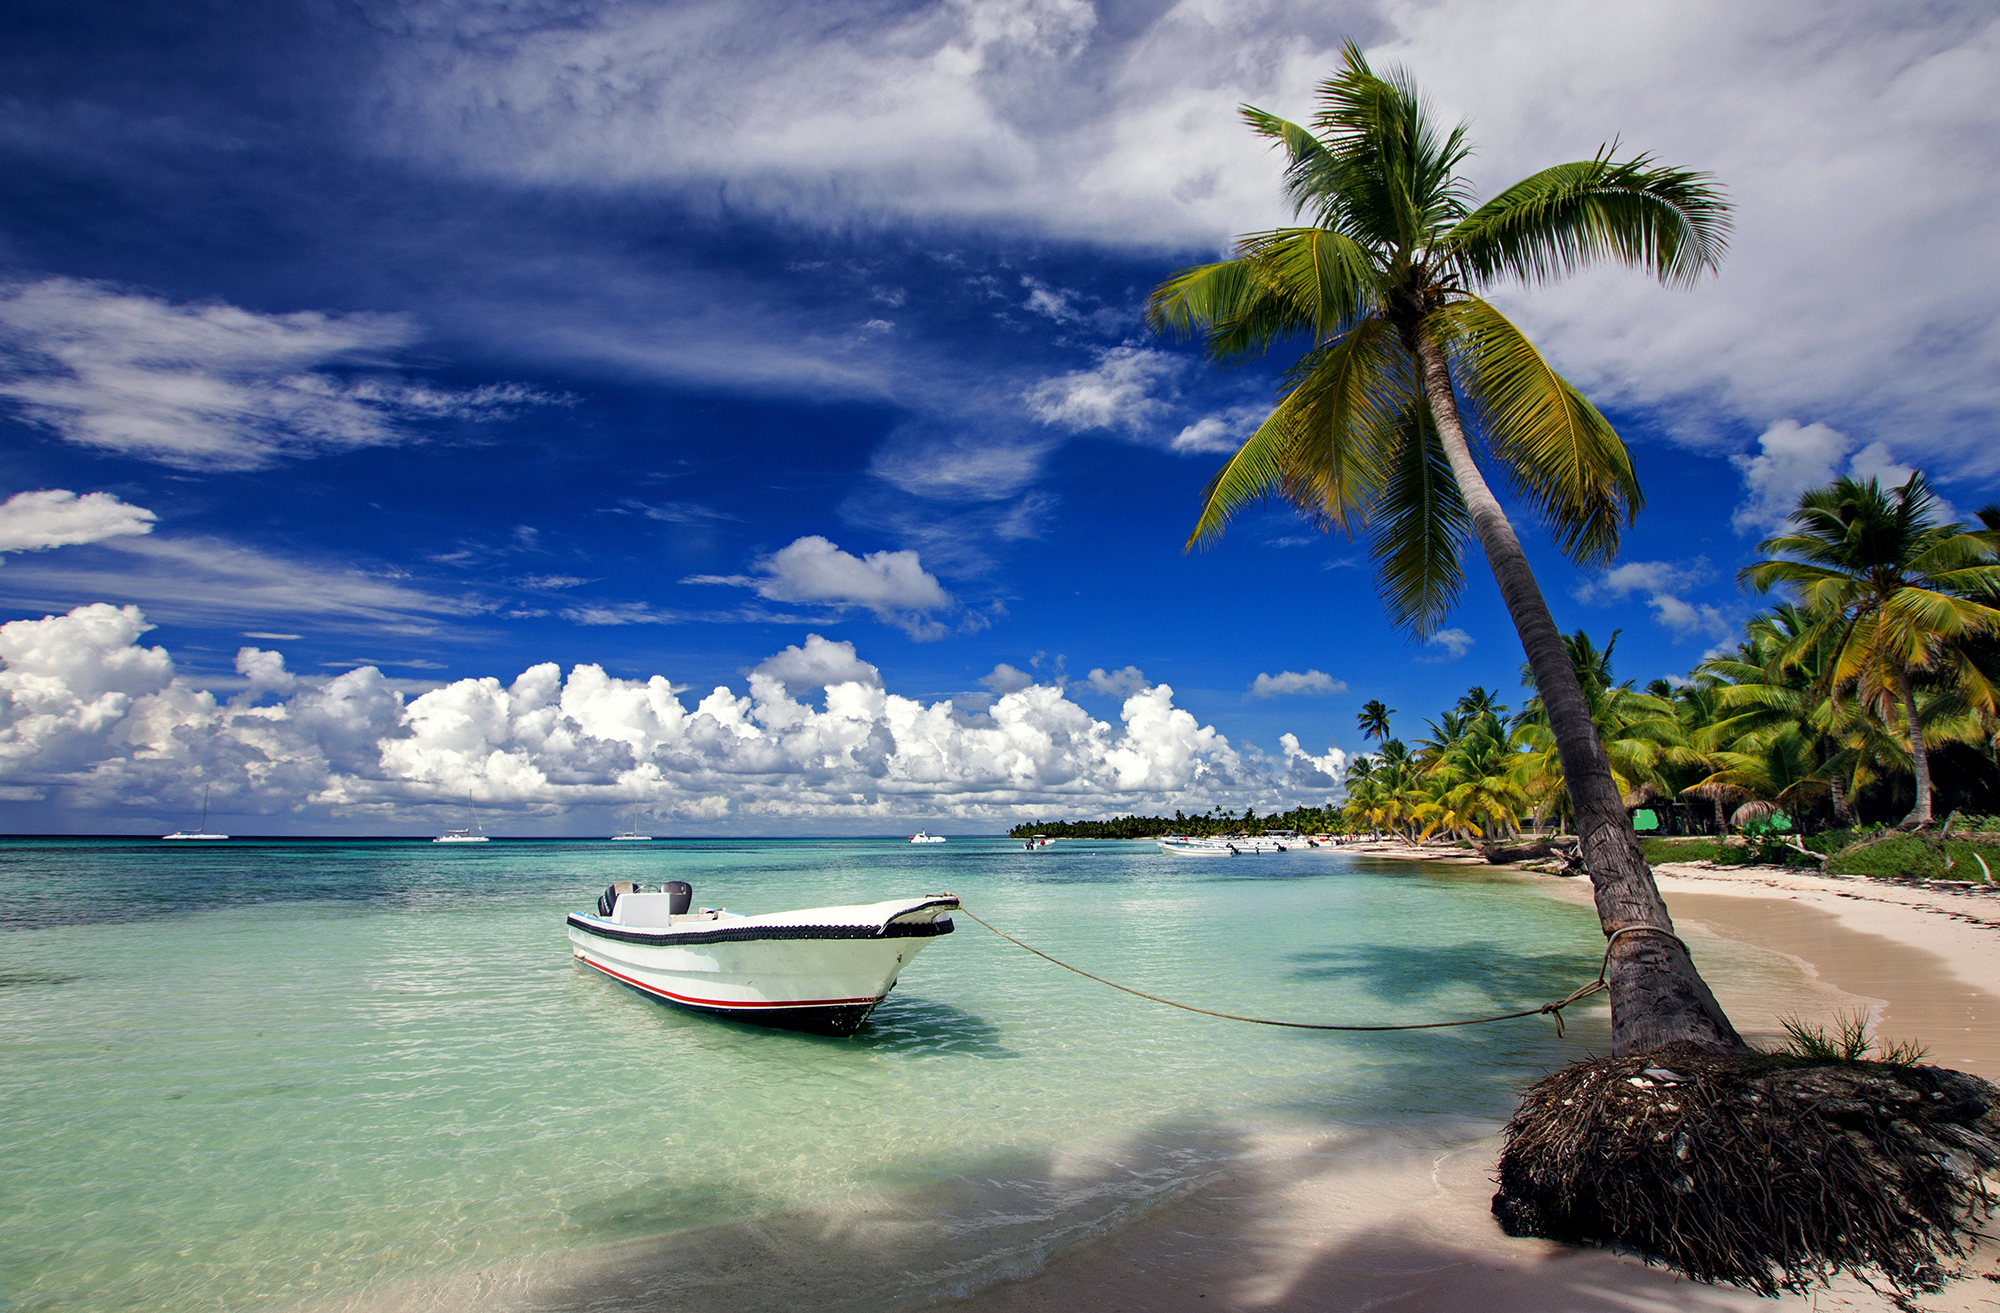 Les 5 meilleurs sites à visiter dans la République Dominicaine